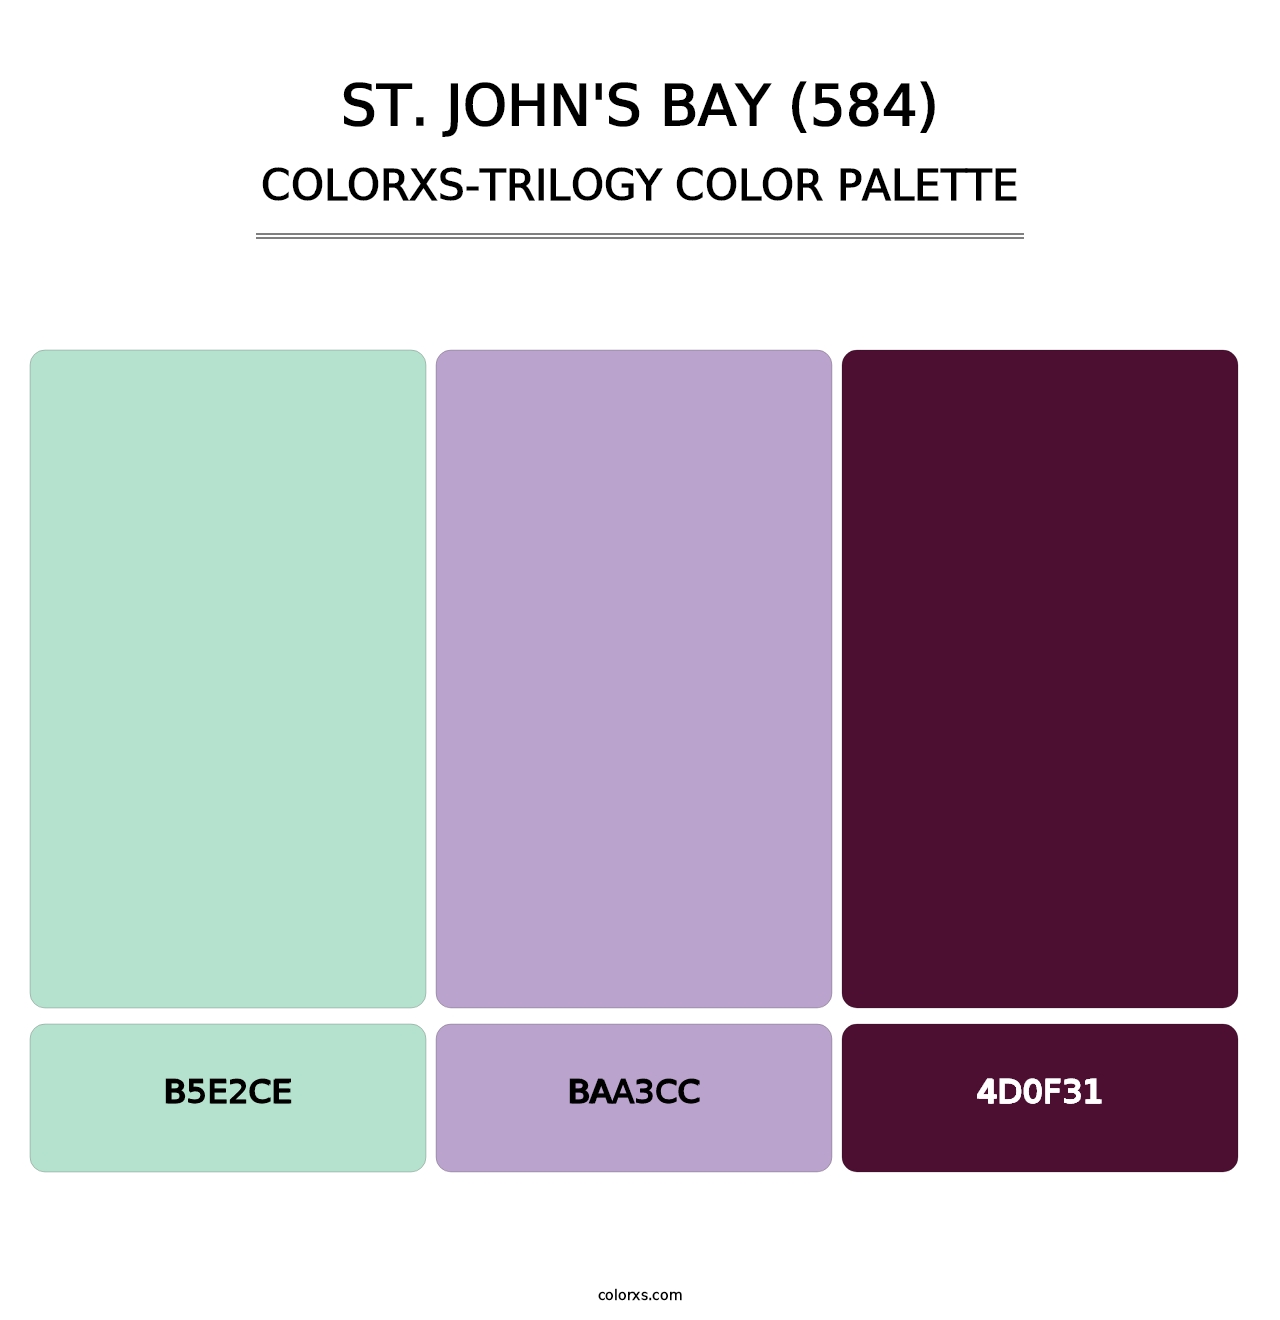 St. John's Bay (584) - Colorxs Trilogy Palette